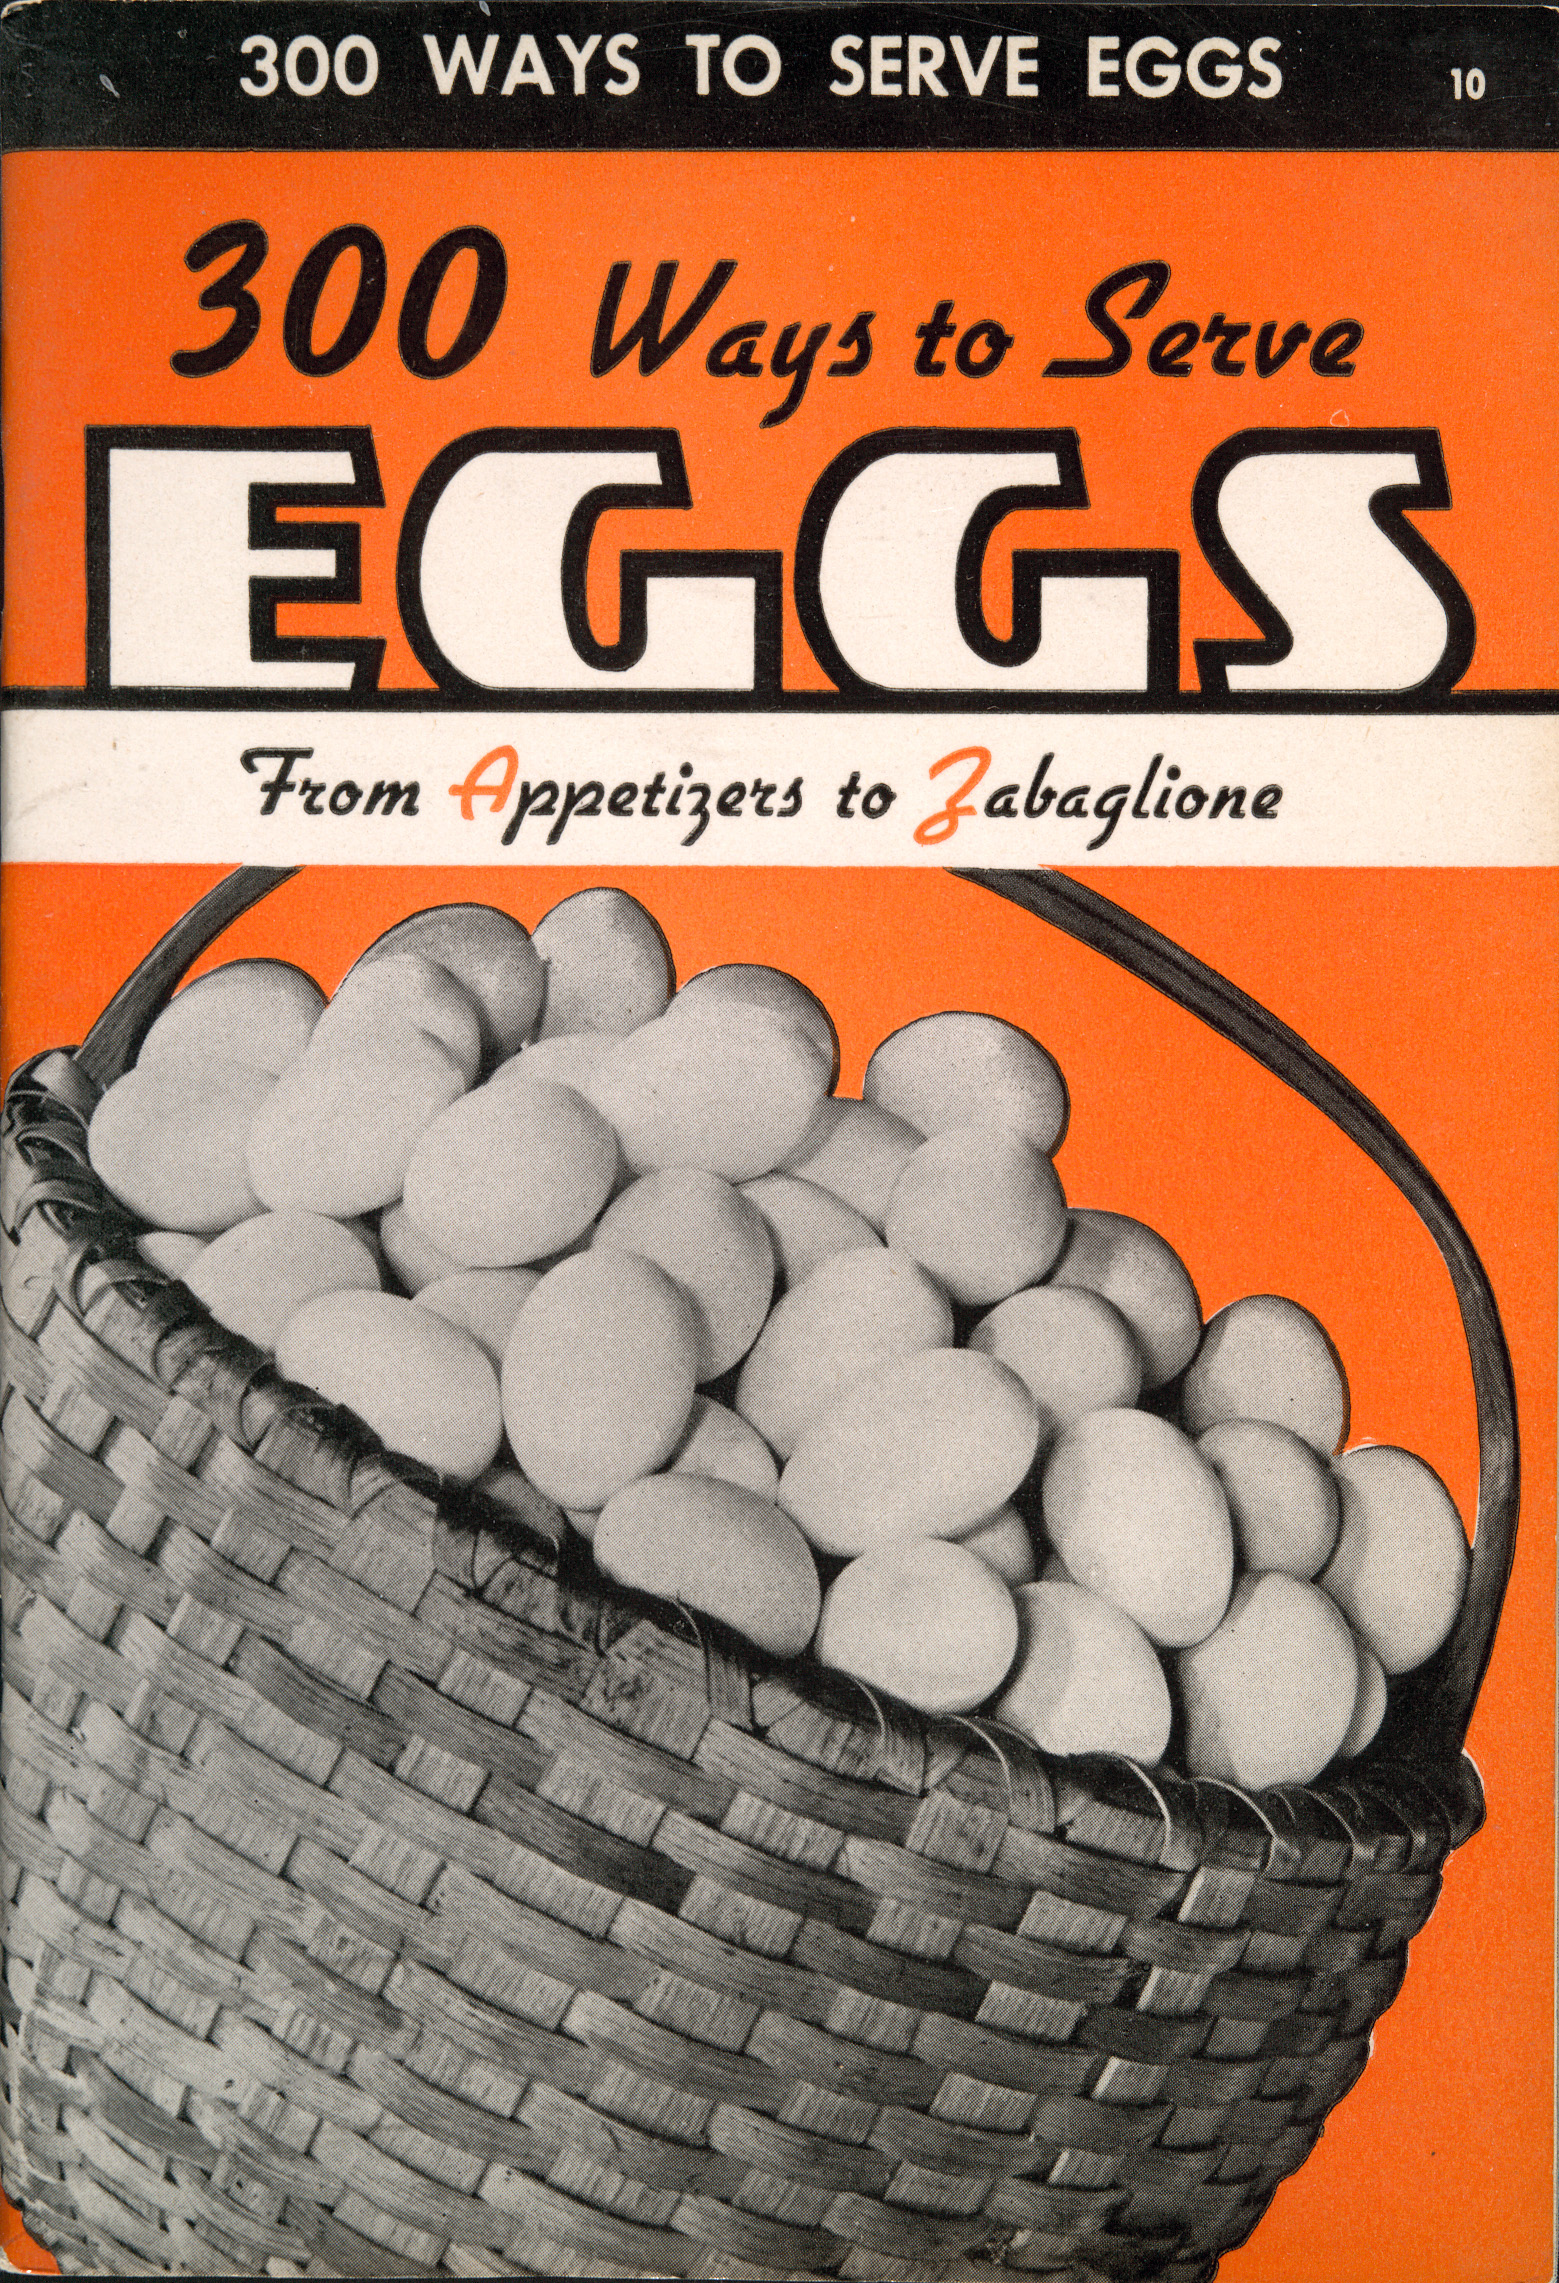 300 Ways to Serve Eggs. 